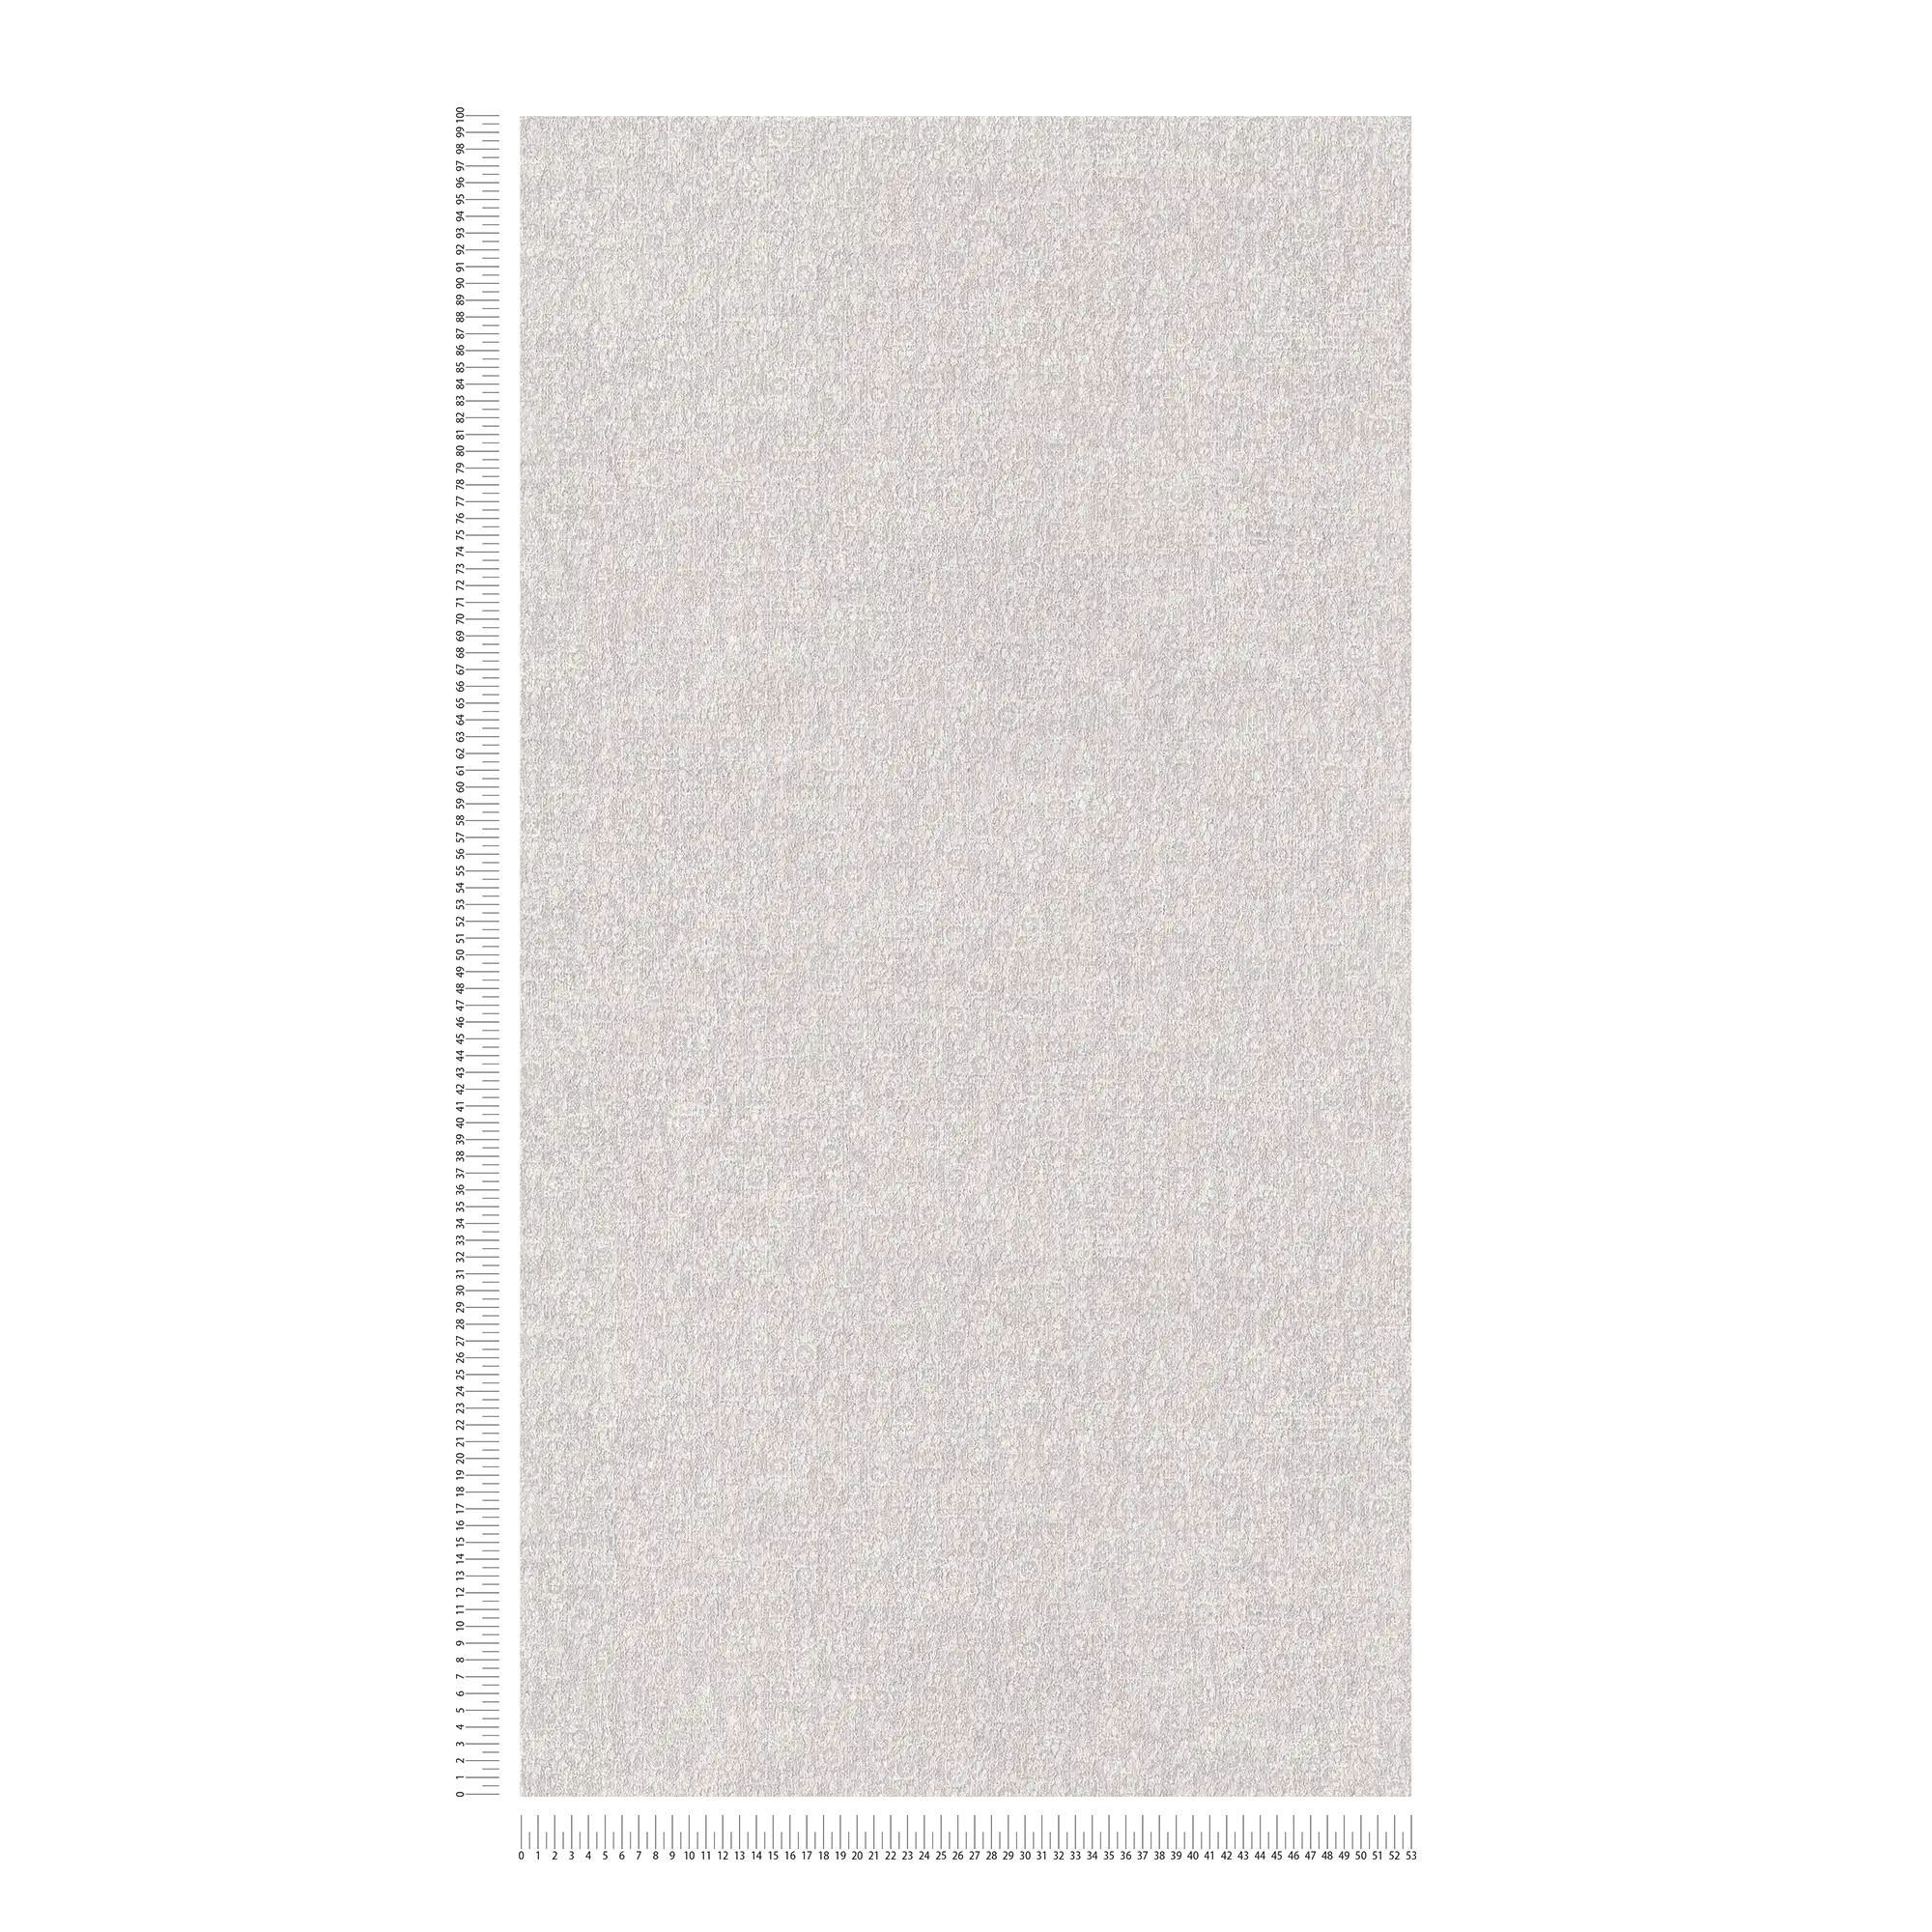             Carta da parati in tessuto non tessuto liscio crema con effetto texture tessile
        